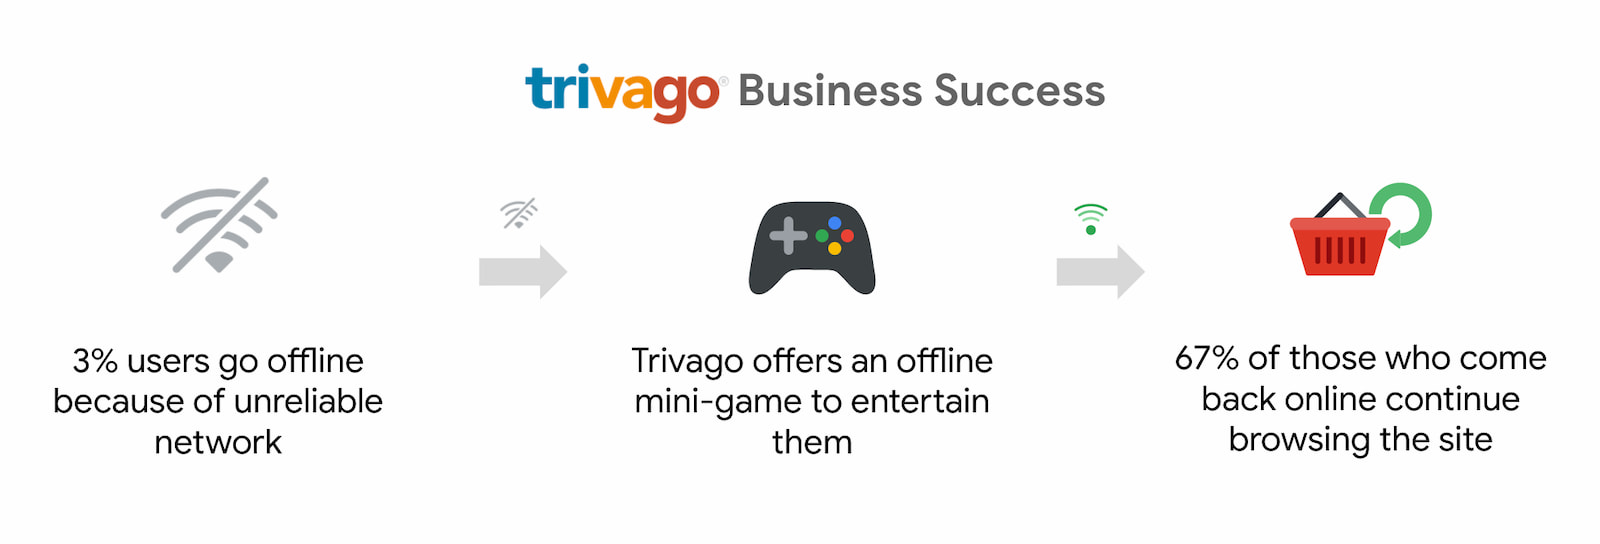 Trivago nhận thấy số người dùng quay lại trực tuyến và tiếp tục duyệt web tăng 67%.